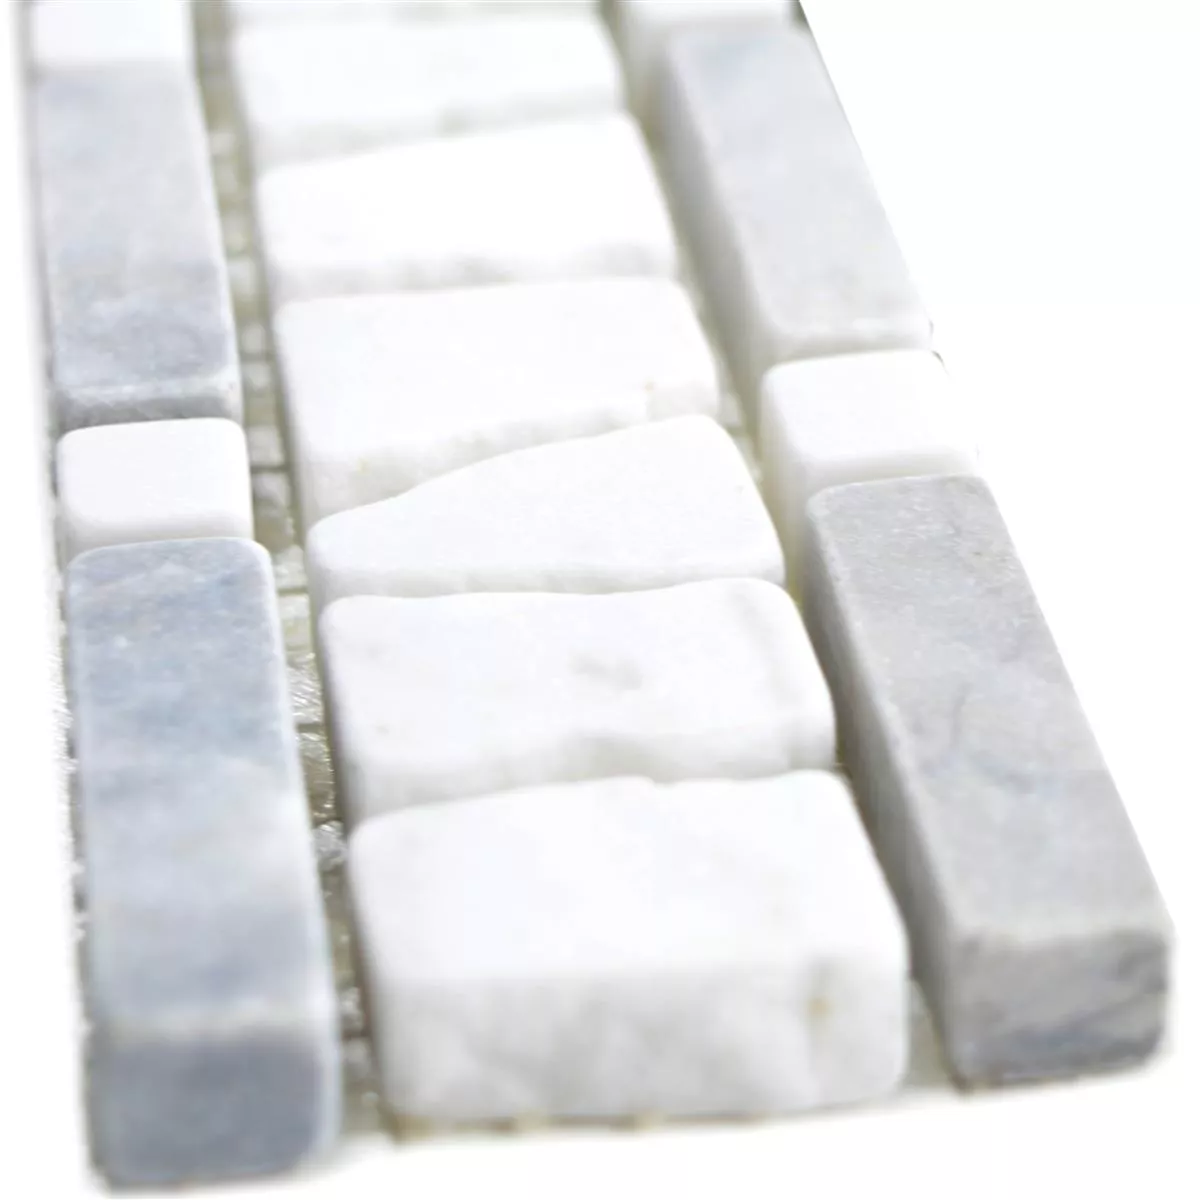 Natural Stone Tiles Border Vimeiro Grey White